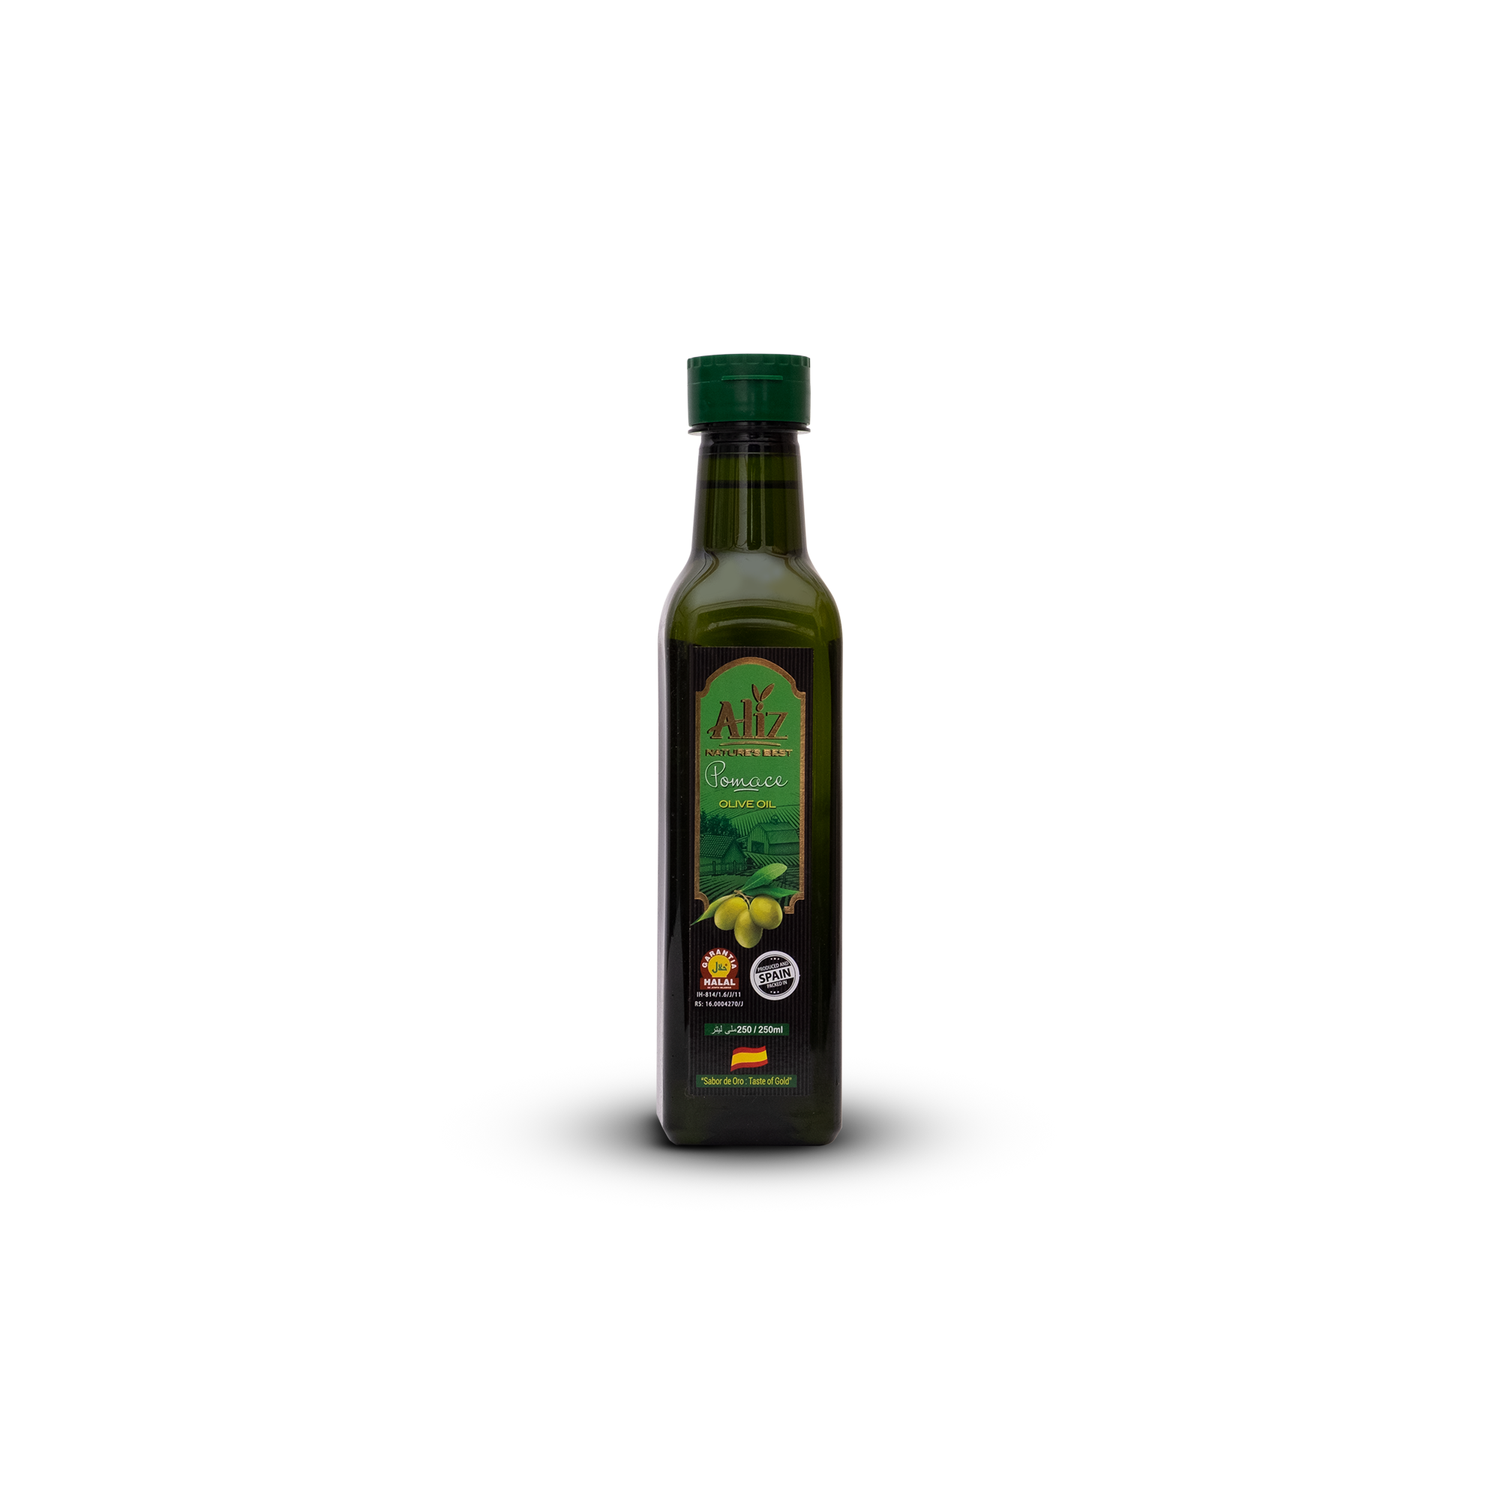 Aliz Pomace Olive Oil 250 ml